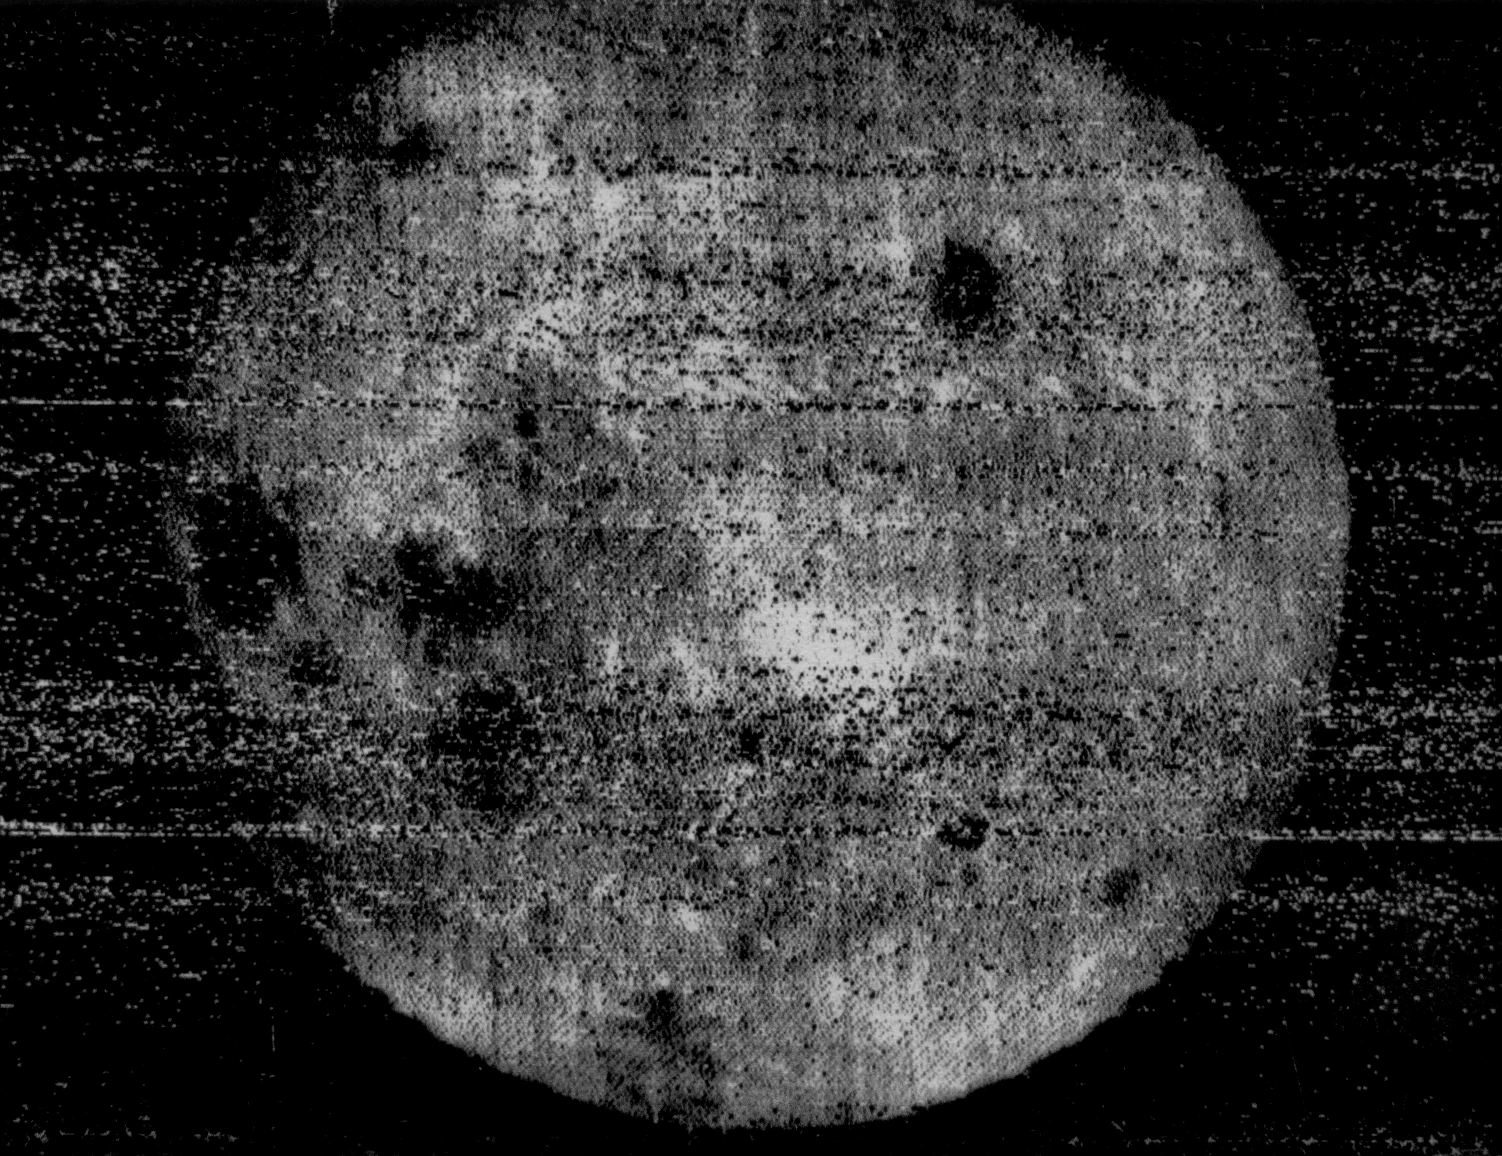 月球3号首次在绕月轨道上近距离拍摄了月球的照片